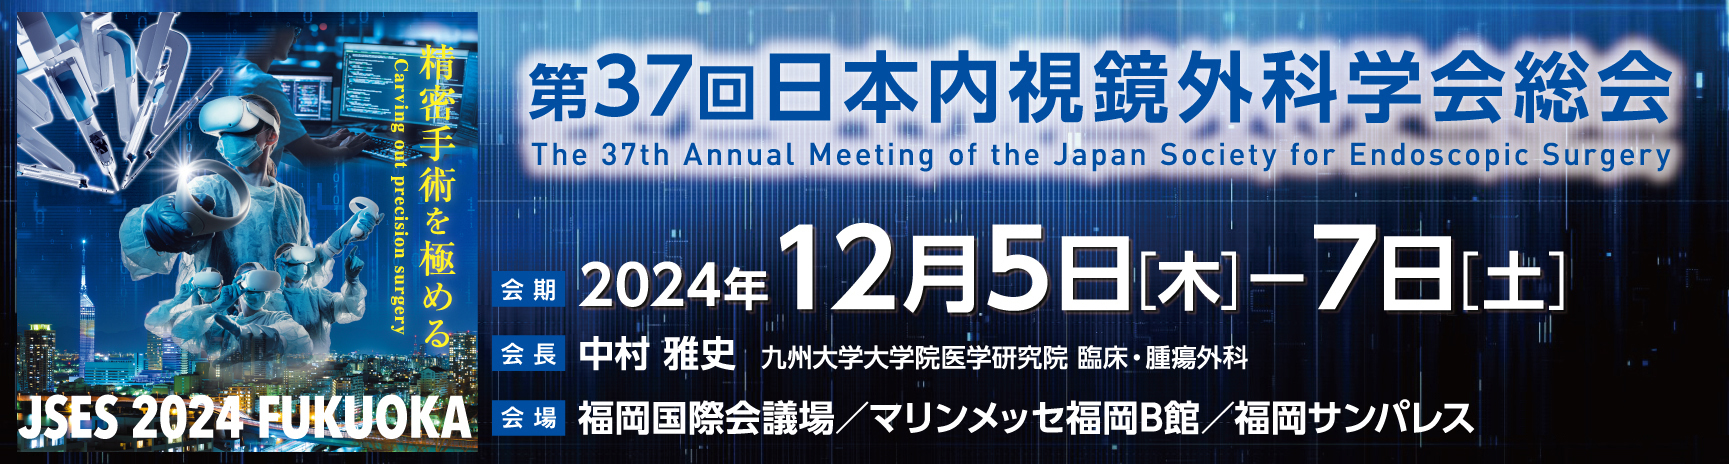 第35回日本内視鏡外科学会総会